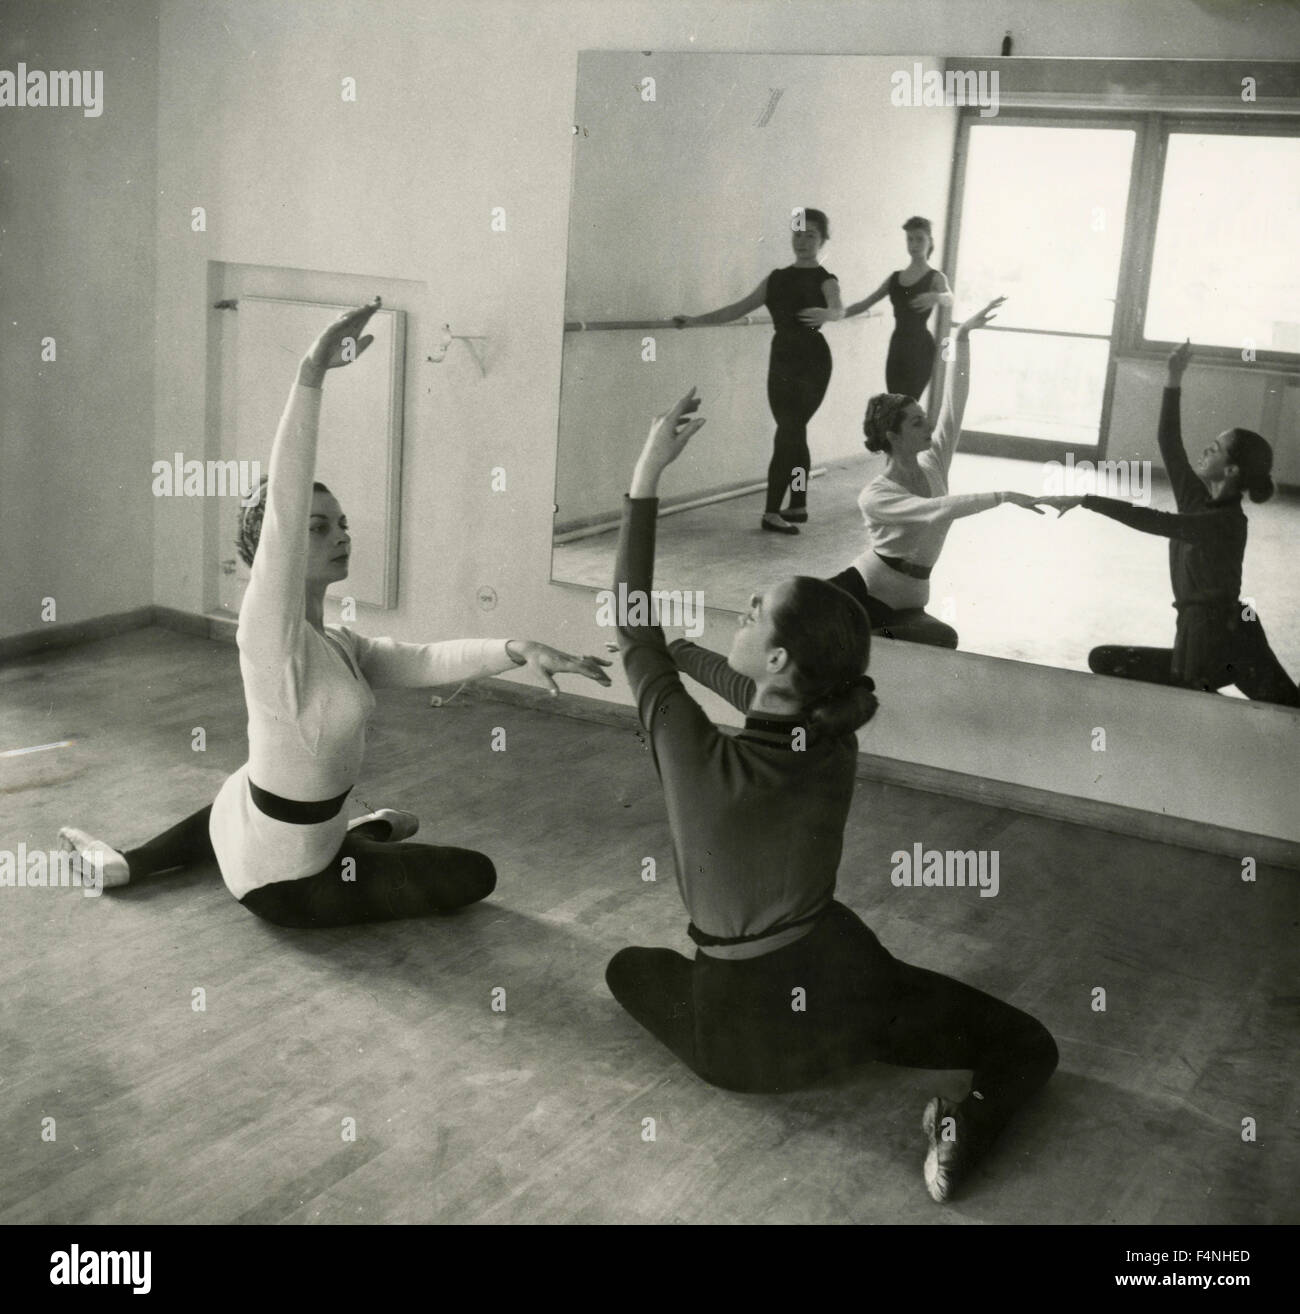 Ballet exercises Stock Photo